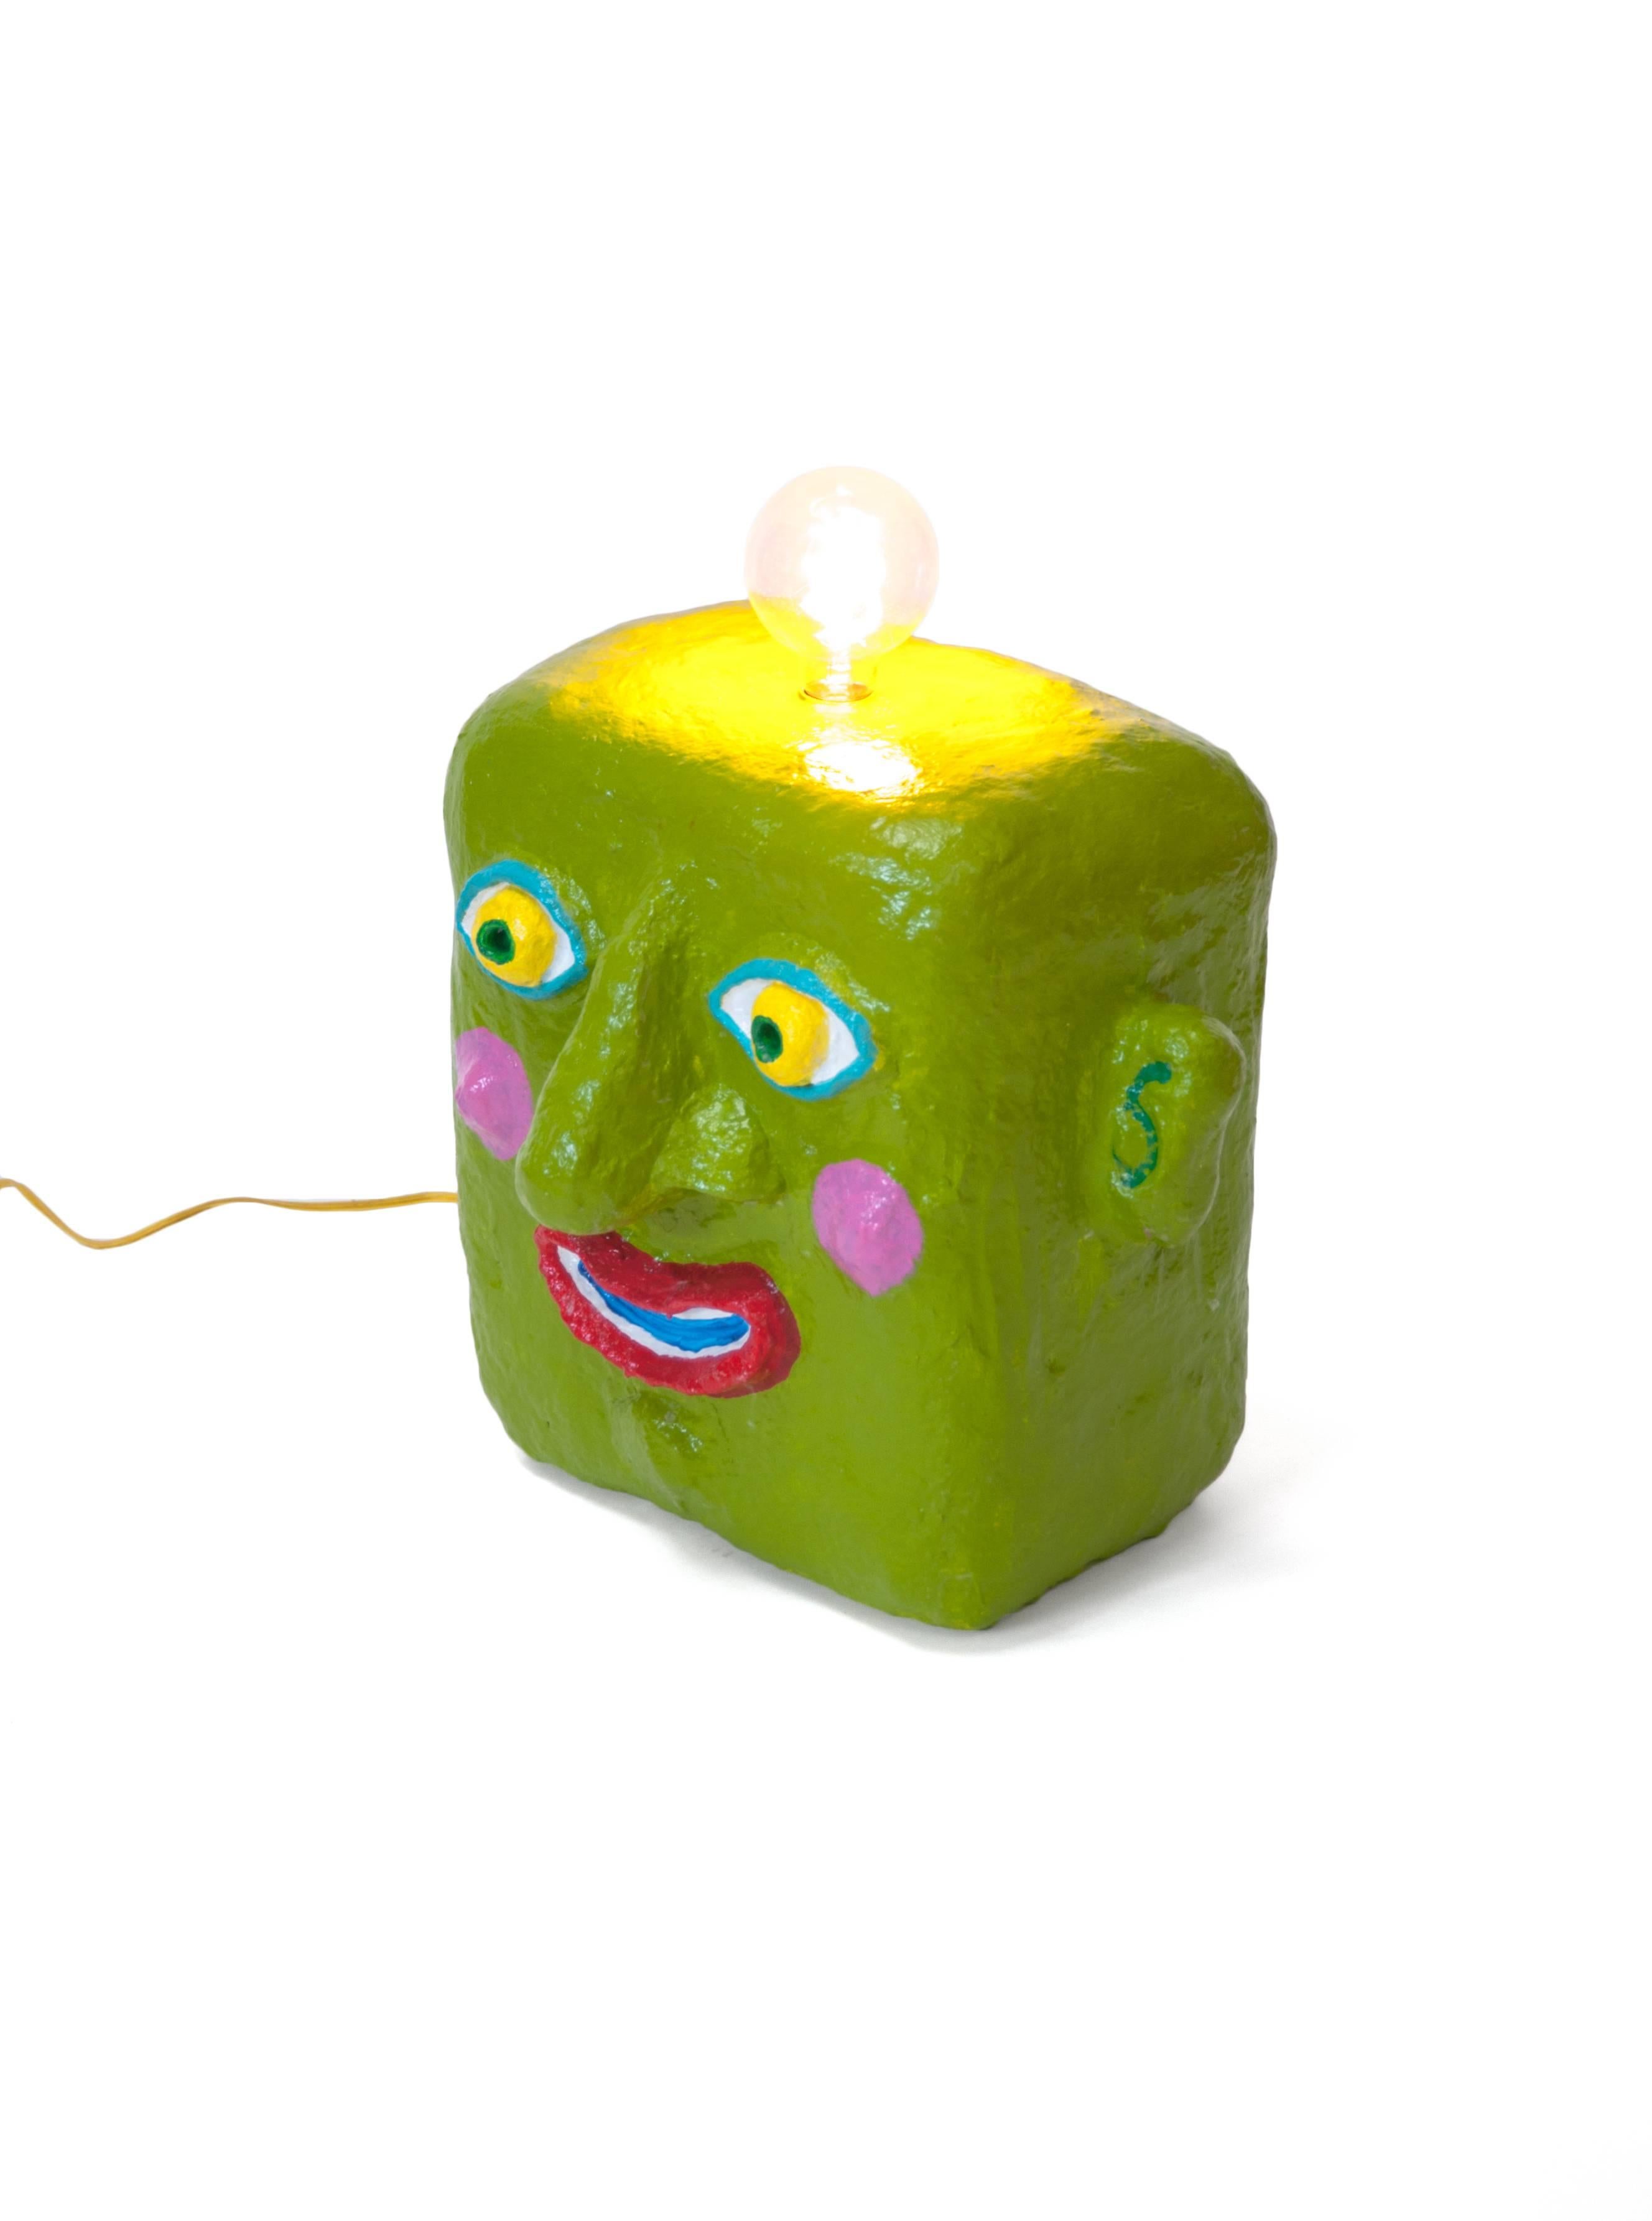 American Green Smile Lamp by Brett Douglas Hunter, USA, 2018 For Sale